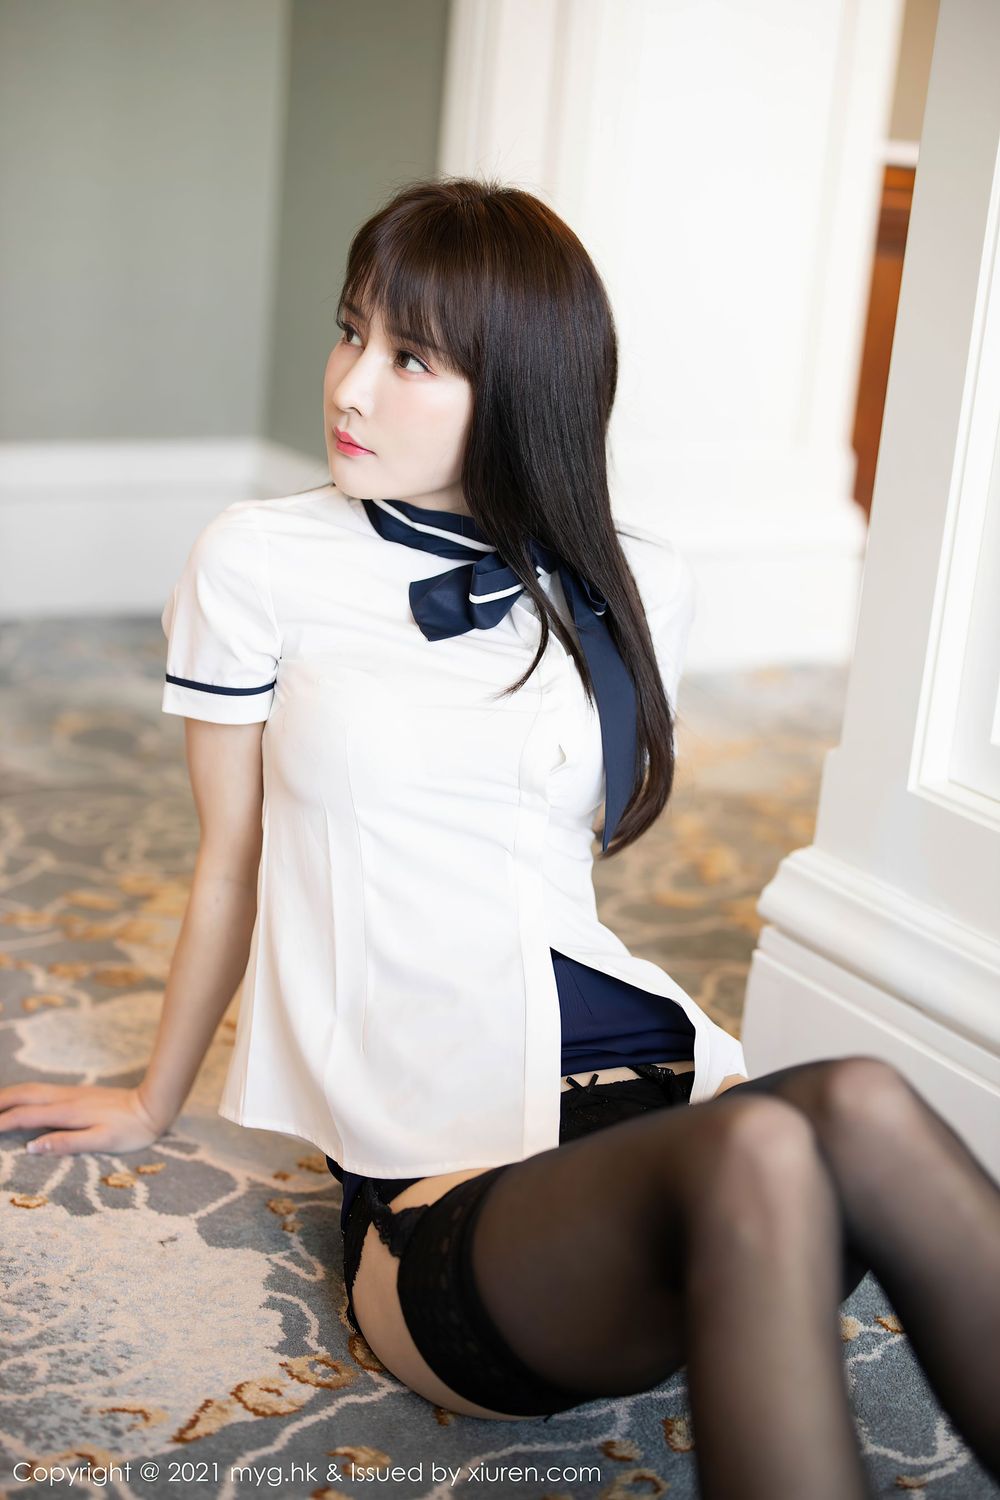 美女模特蔡文钰Abby - 白衬衫+黑丝吊袜系列写真